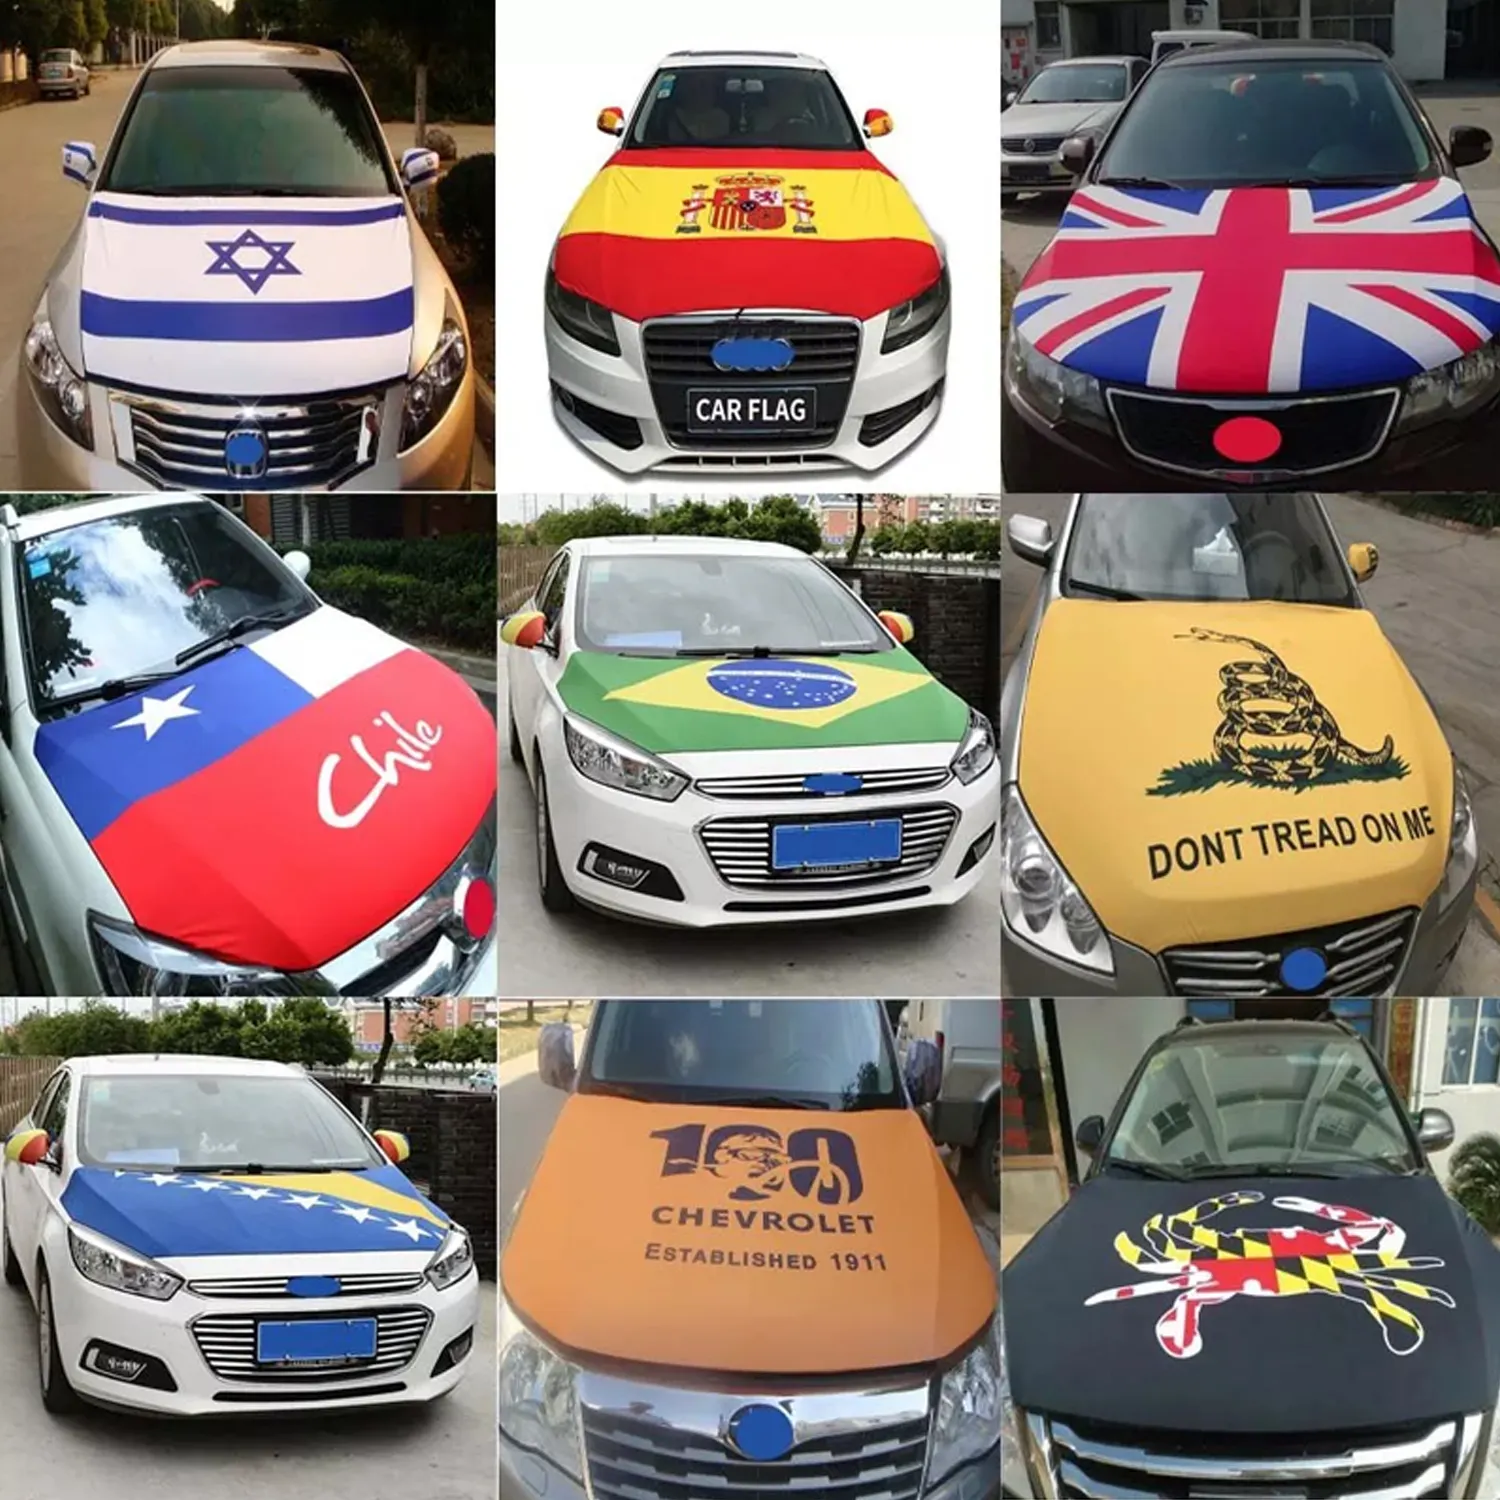 अल्बानिया कार डाकू झंडा ब्राजील ऑस्ट्रेलिया झंडा कार इंजन डाकू को शामिल किया गया कवर कस्टम कार डाकू झंडा